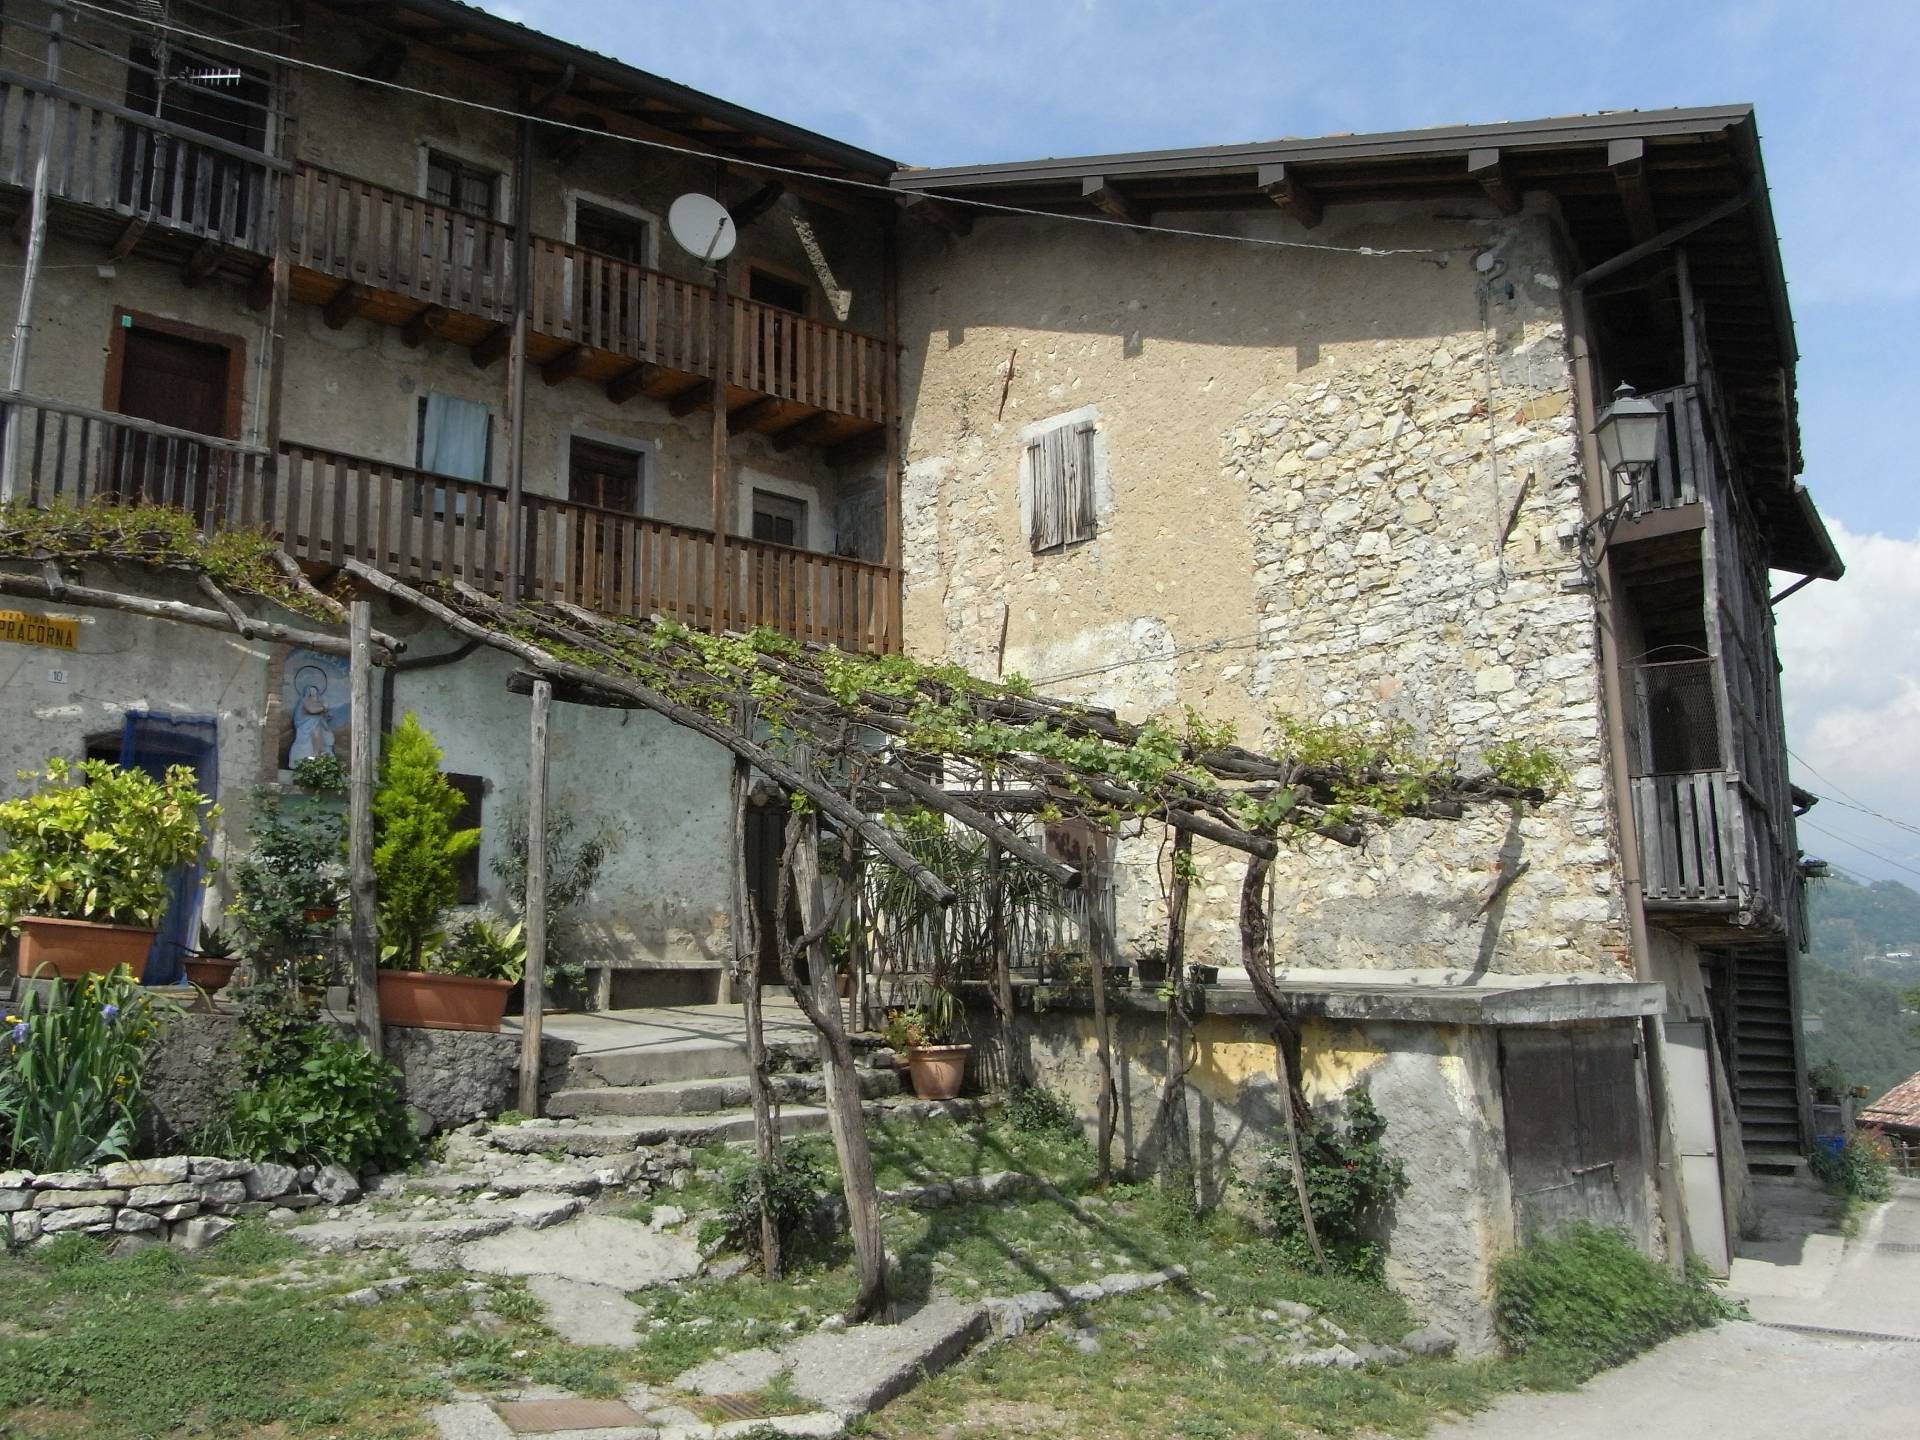 Rustico / Casale in vendita a Ubiale Clanezzo, 3 locali, zona Località: Terrazze, prezzo € 25.000 | PortaleAgenzieImmobiliari.it